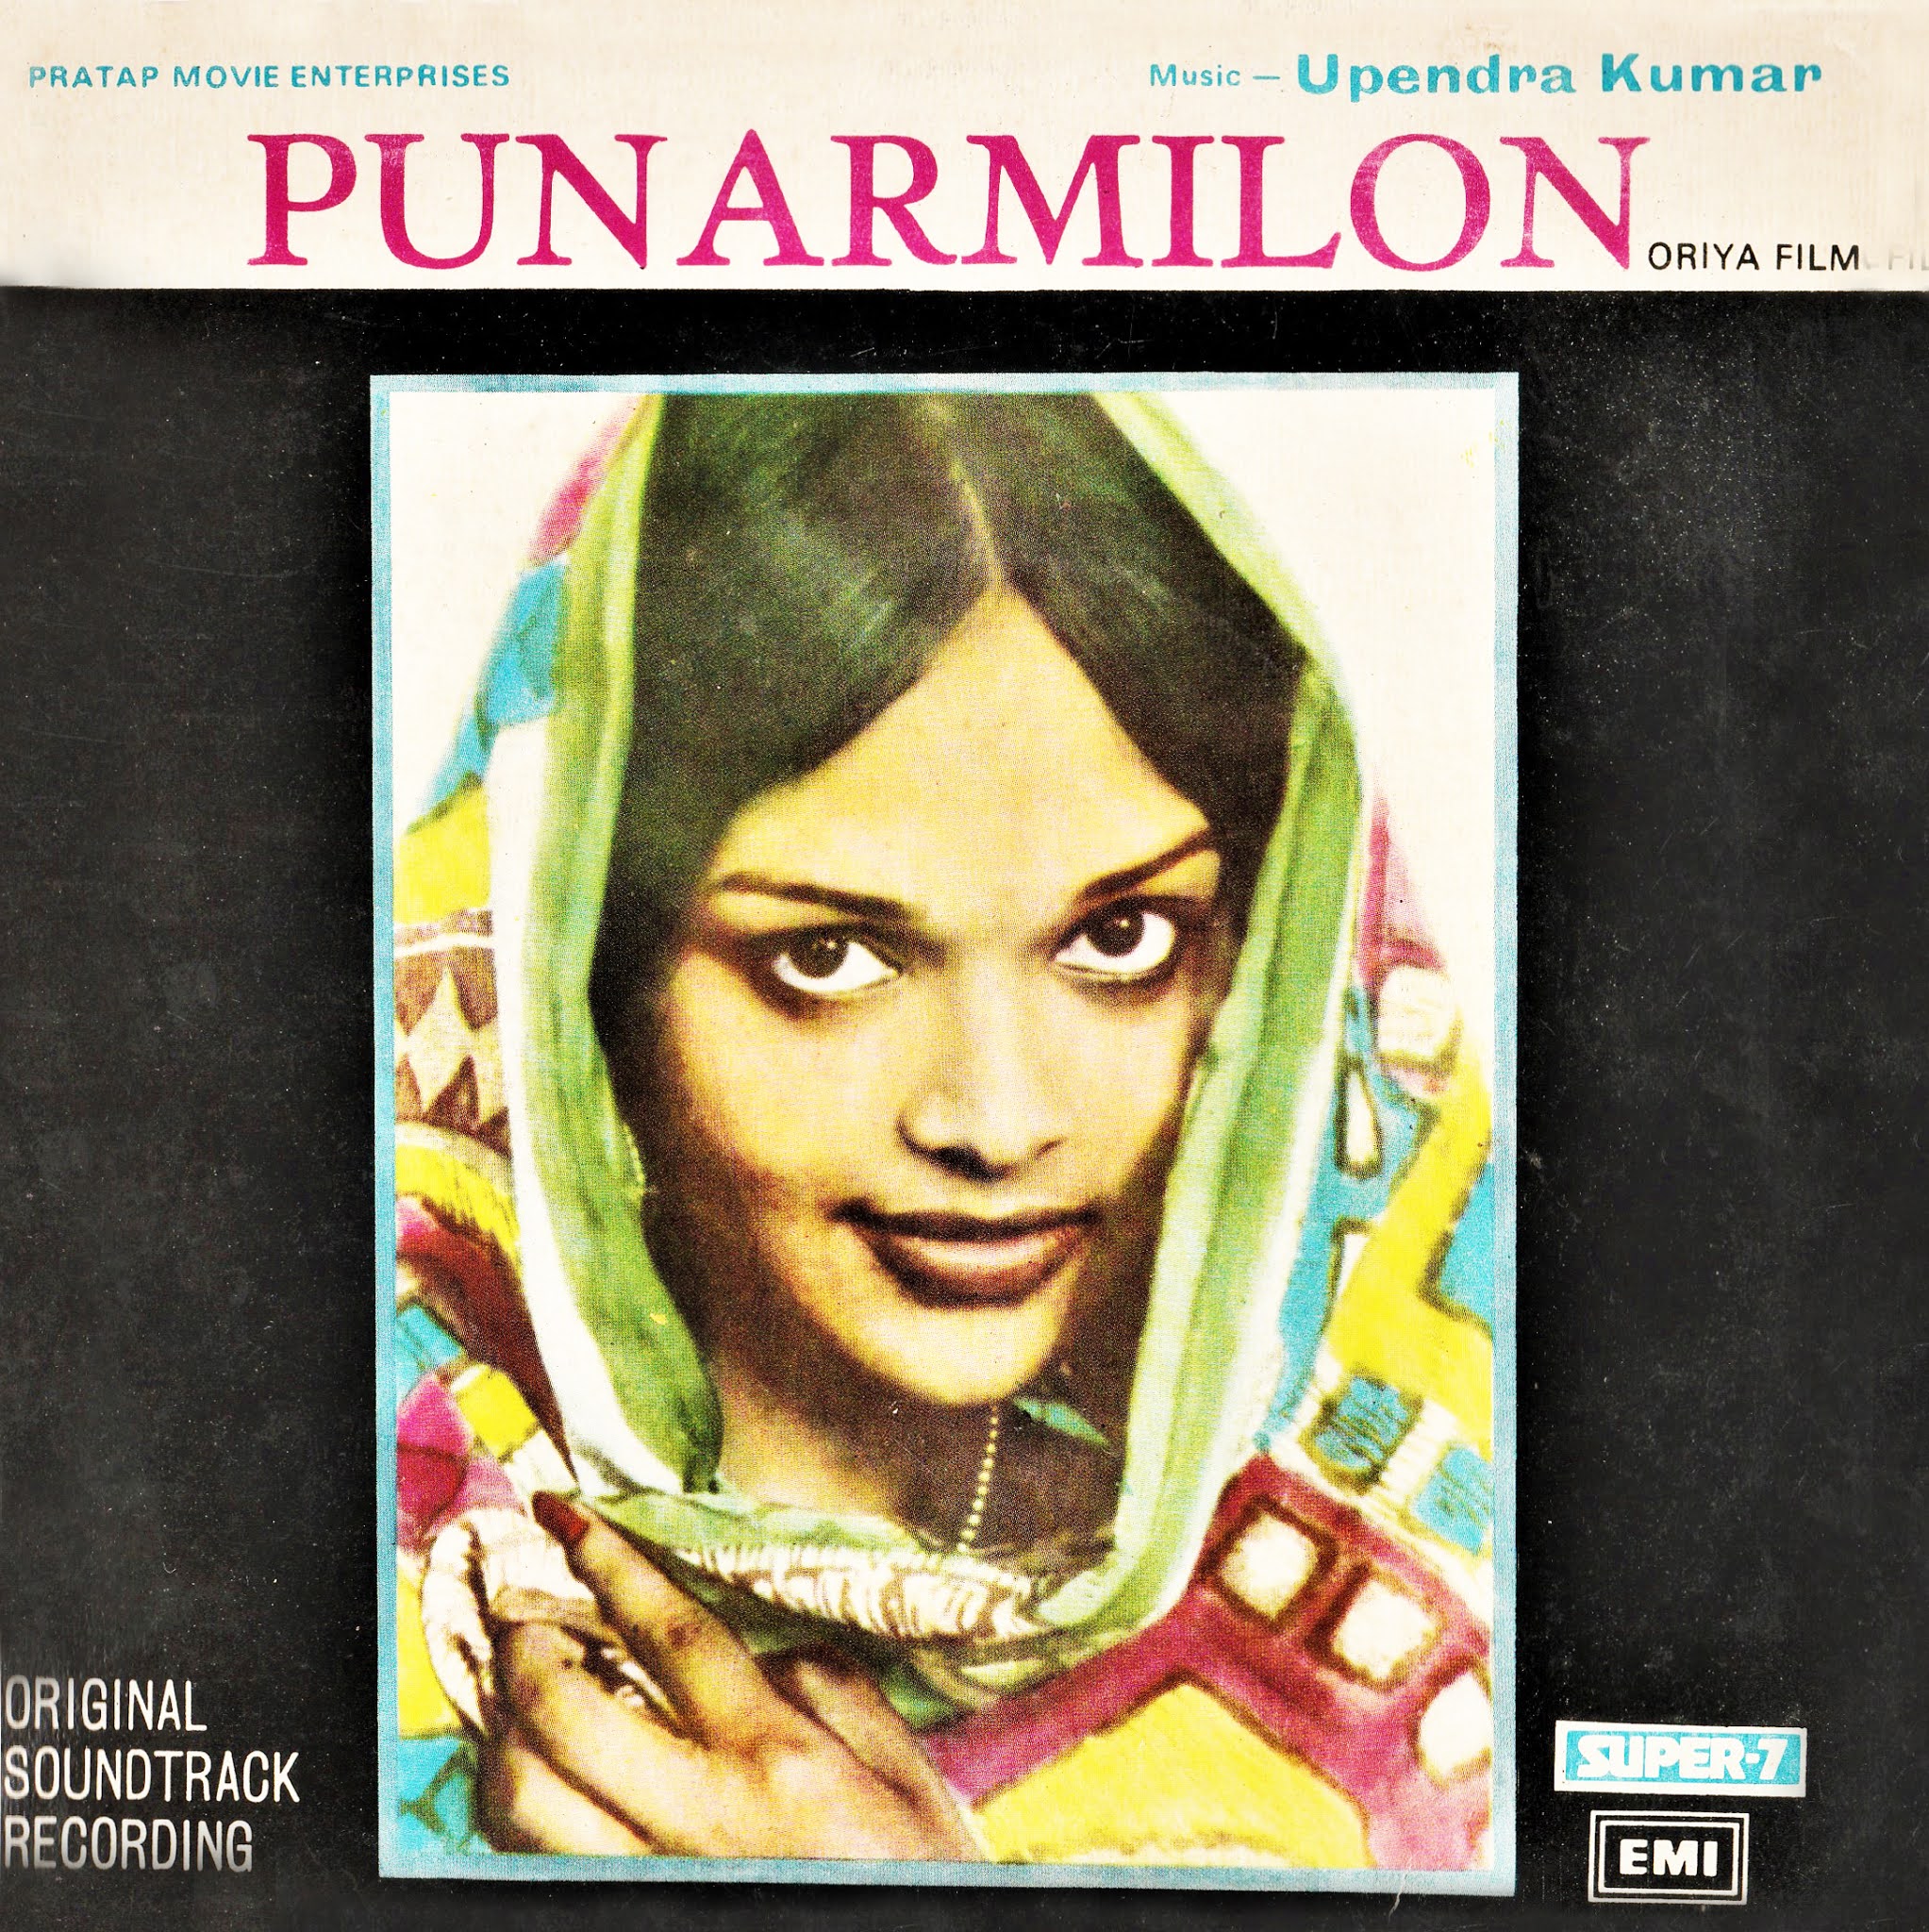 'Punarmilan' audio artwork